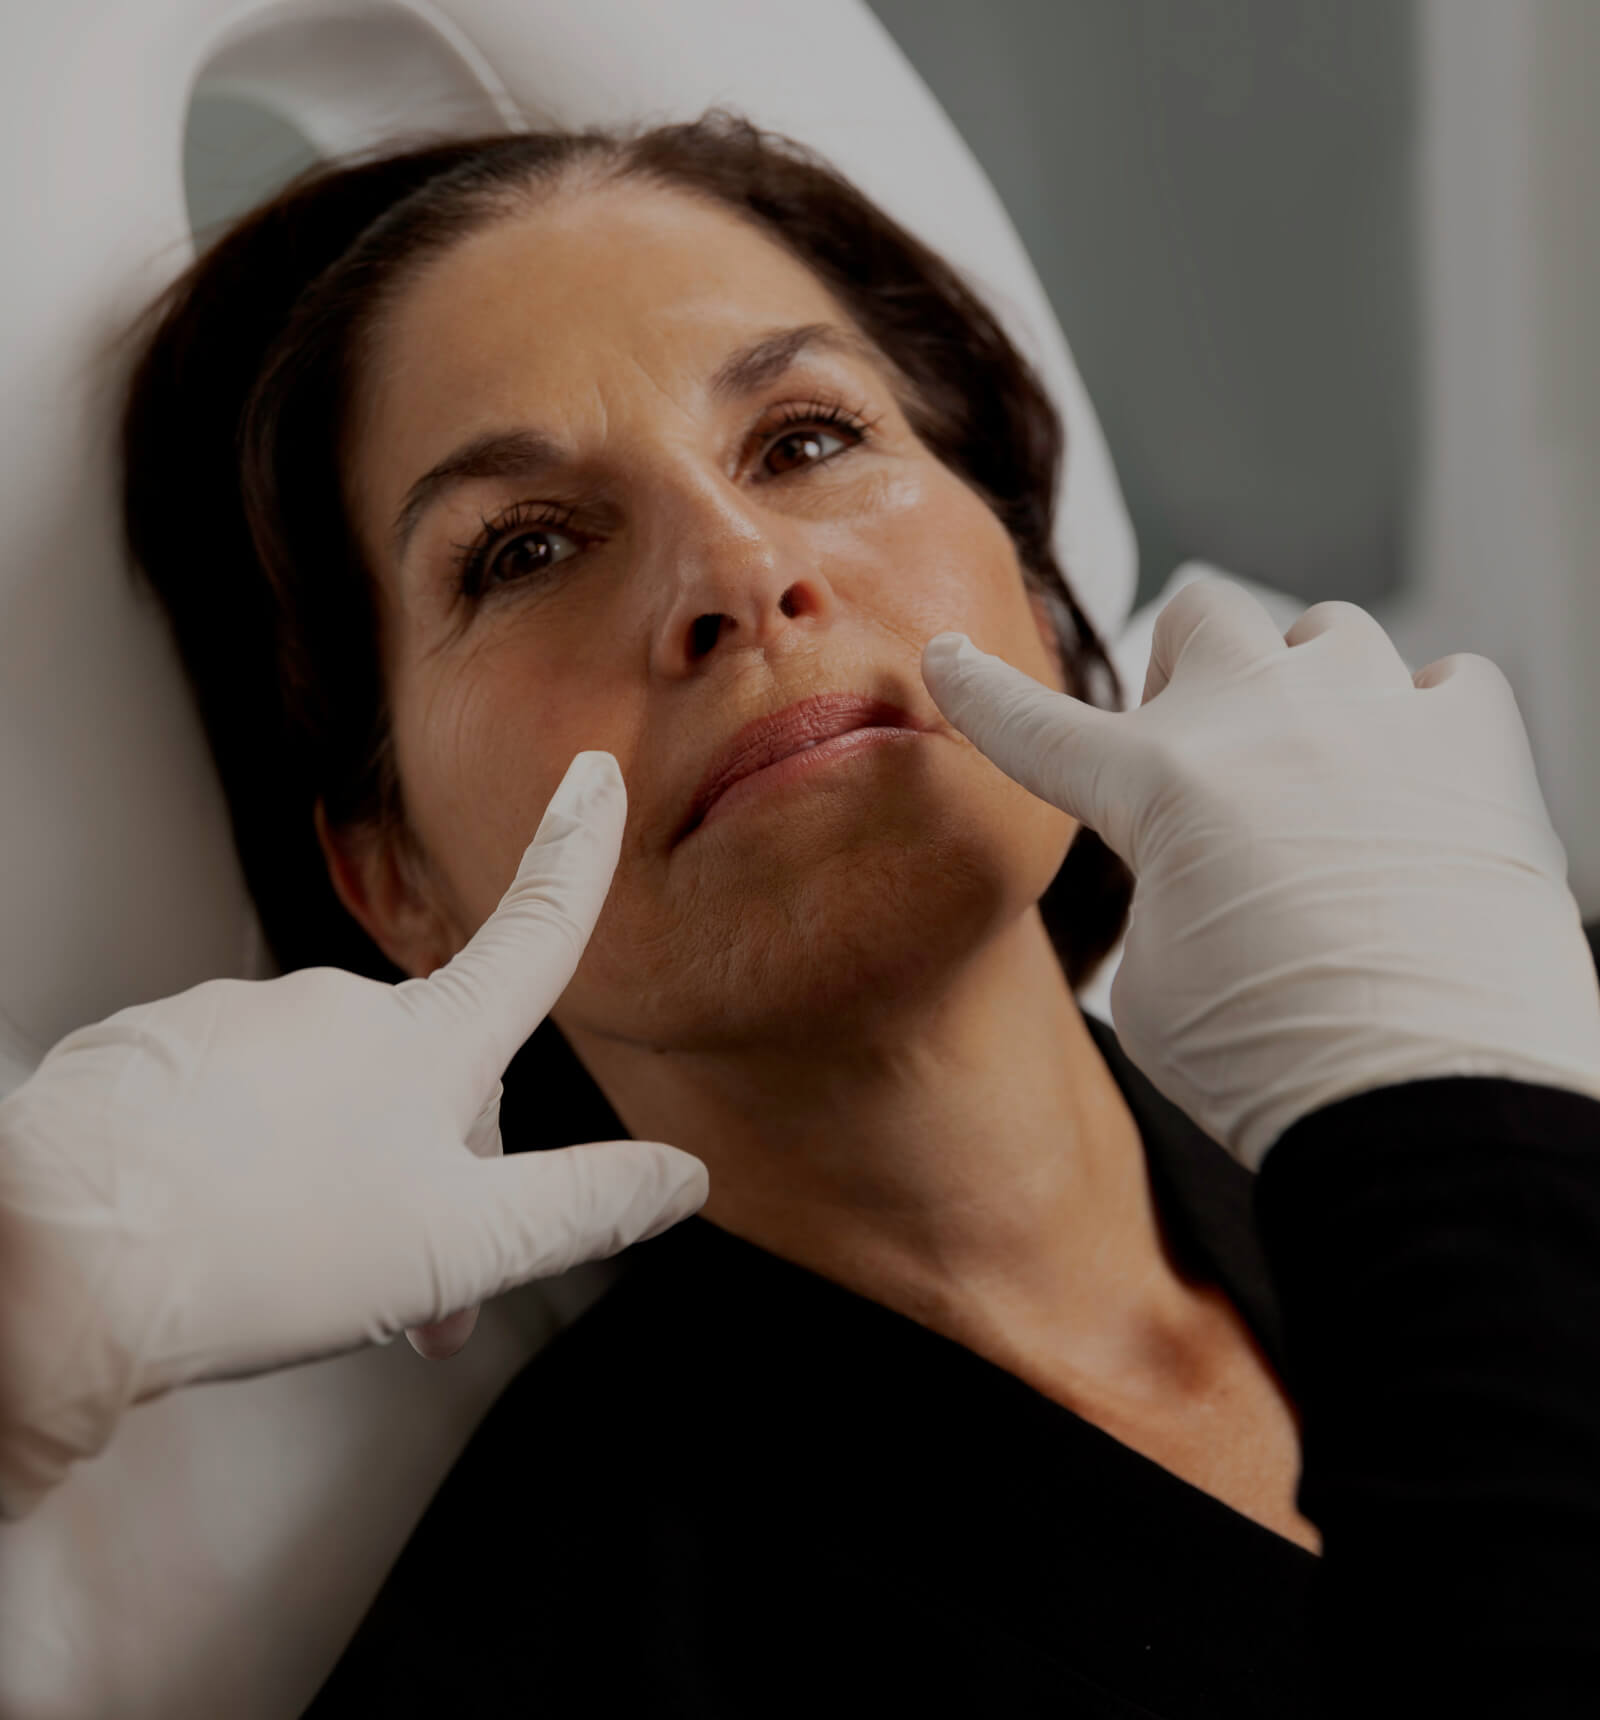 Une technicienne de la Clinique Chloé montrant les rides naso-labiales d'une patiente avec ses deux doigts